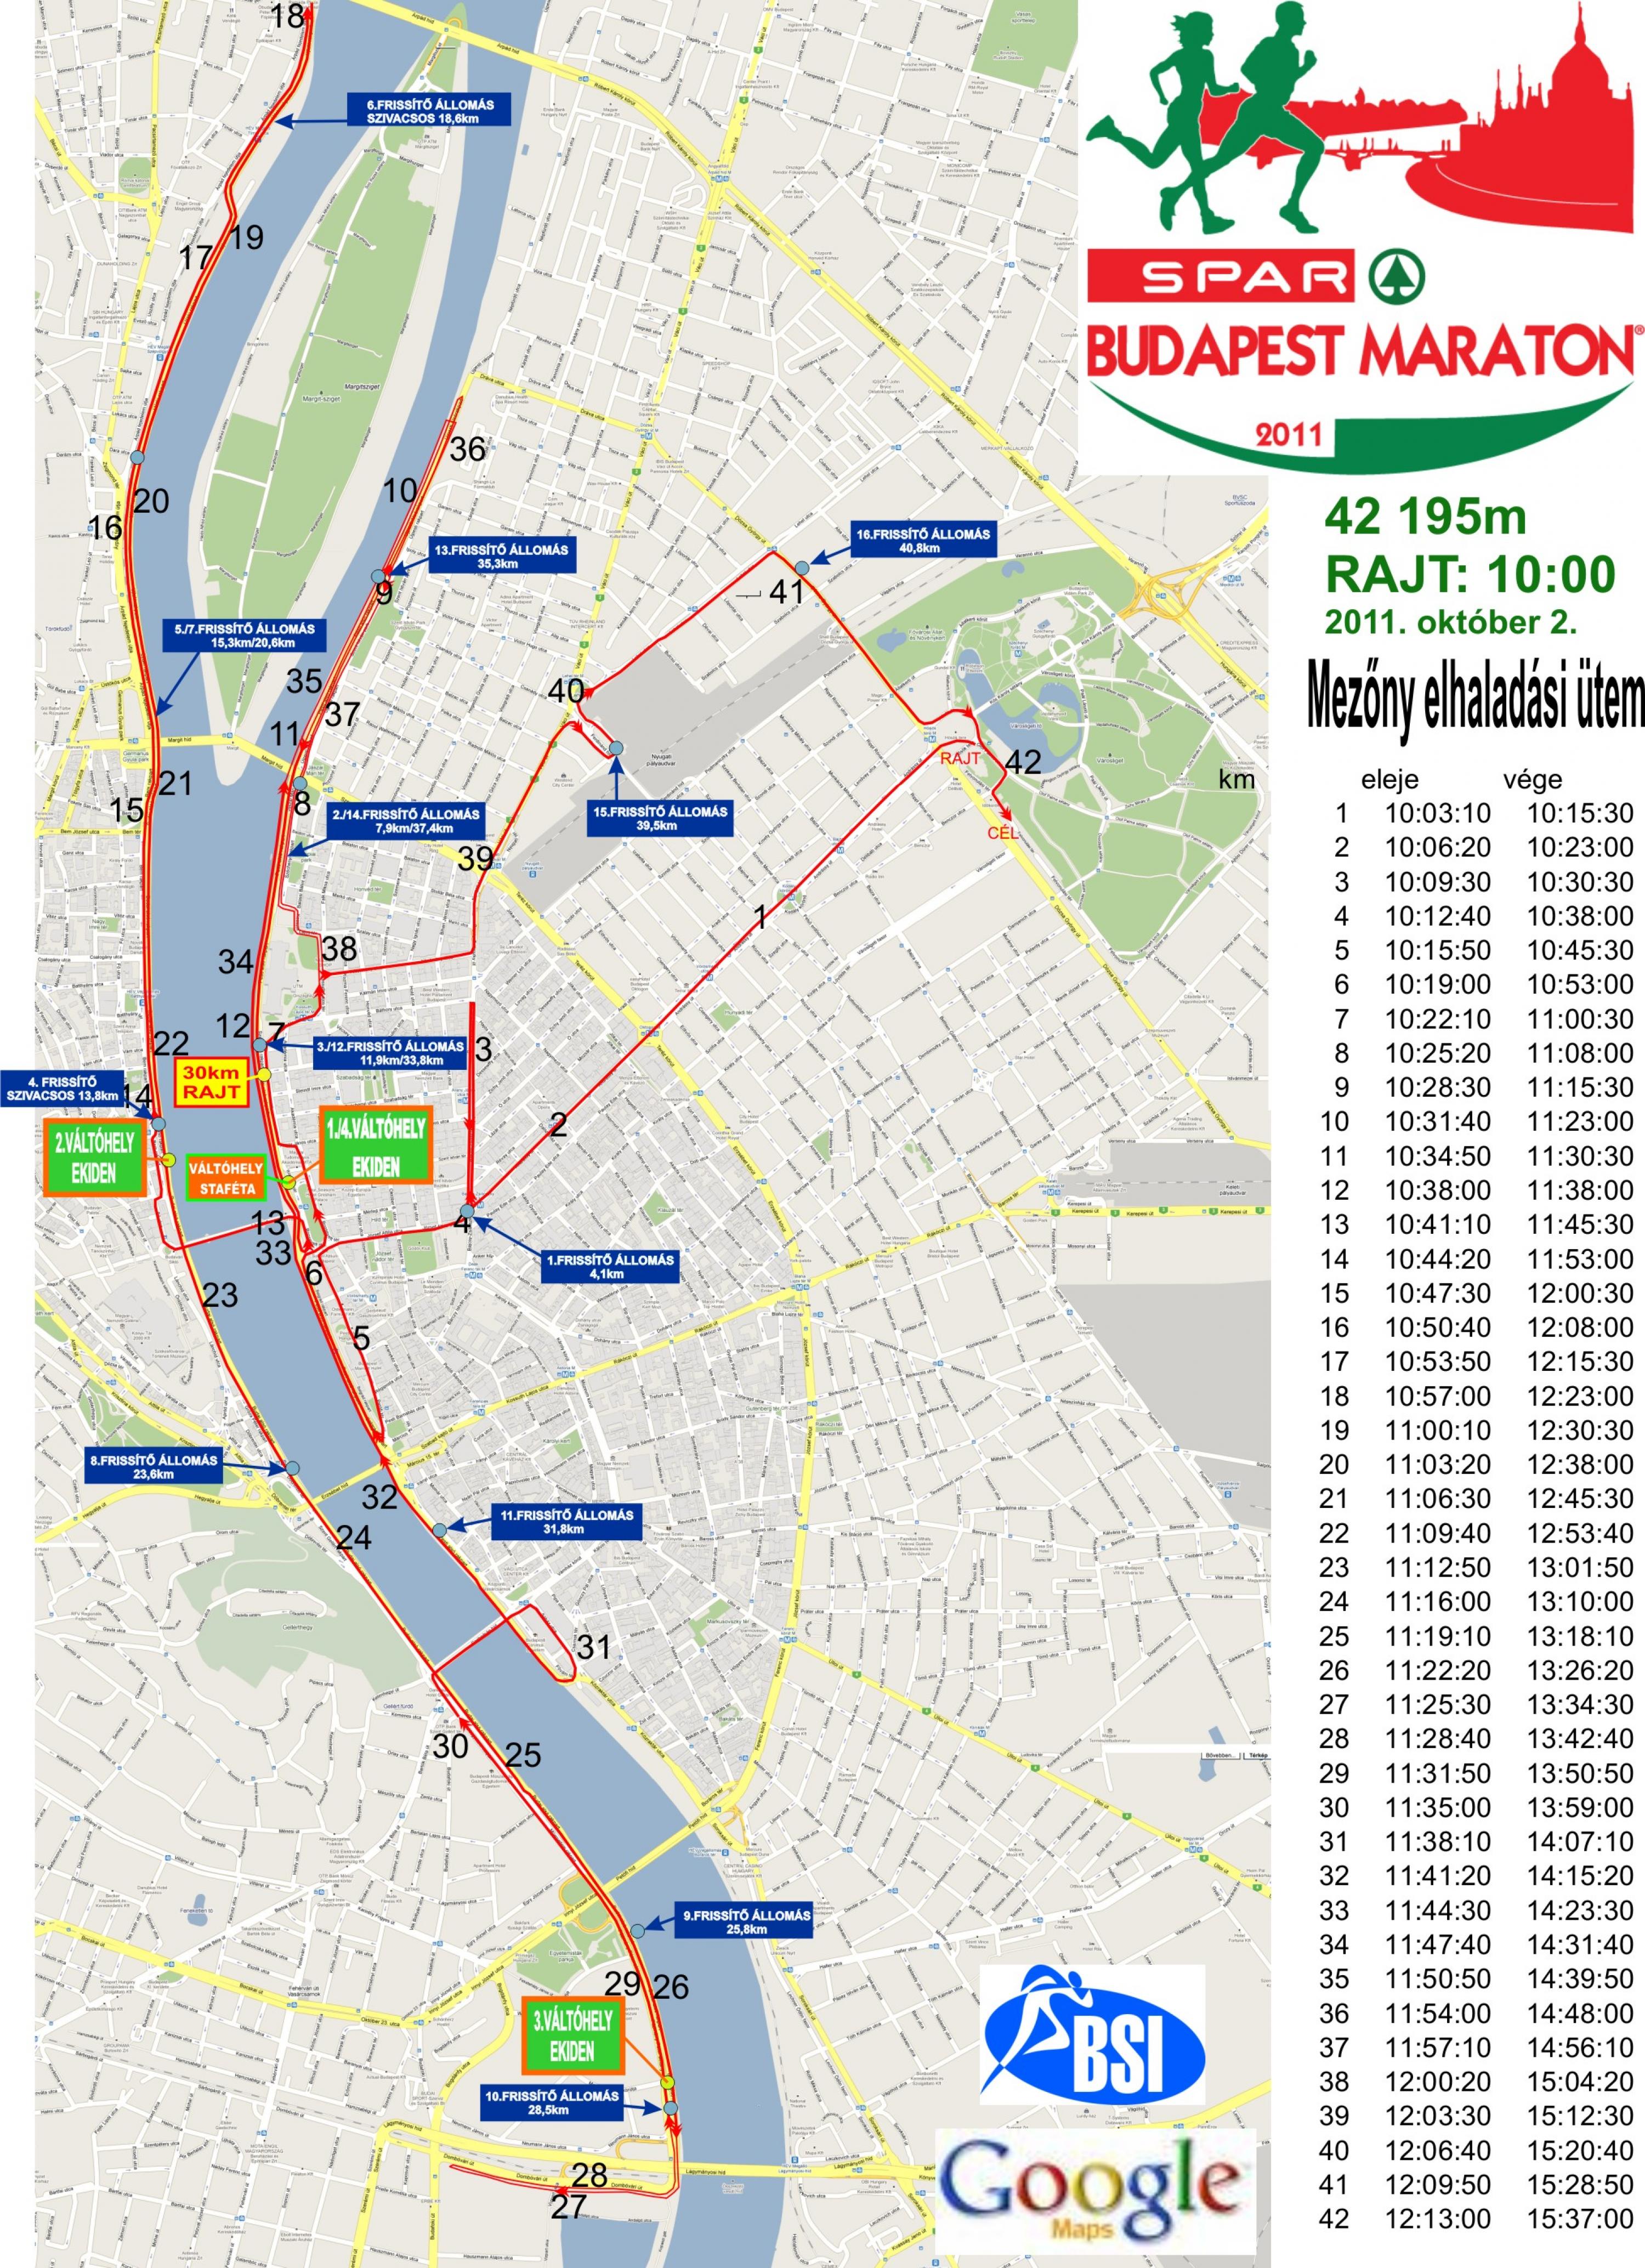 útvonal térkép budapest 27. Spar Budapest Maraton 30 km   térkép   Futanet.hu útvonal térkép budapest